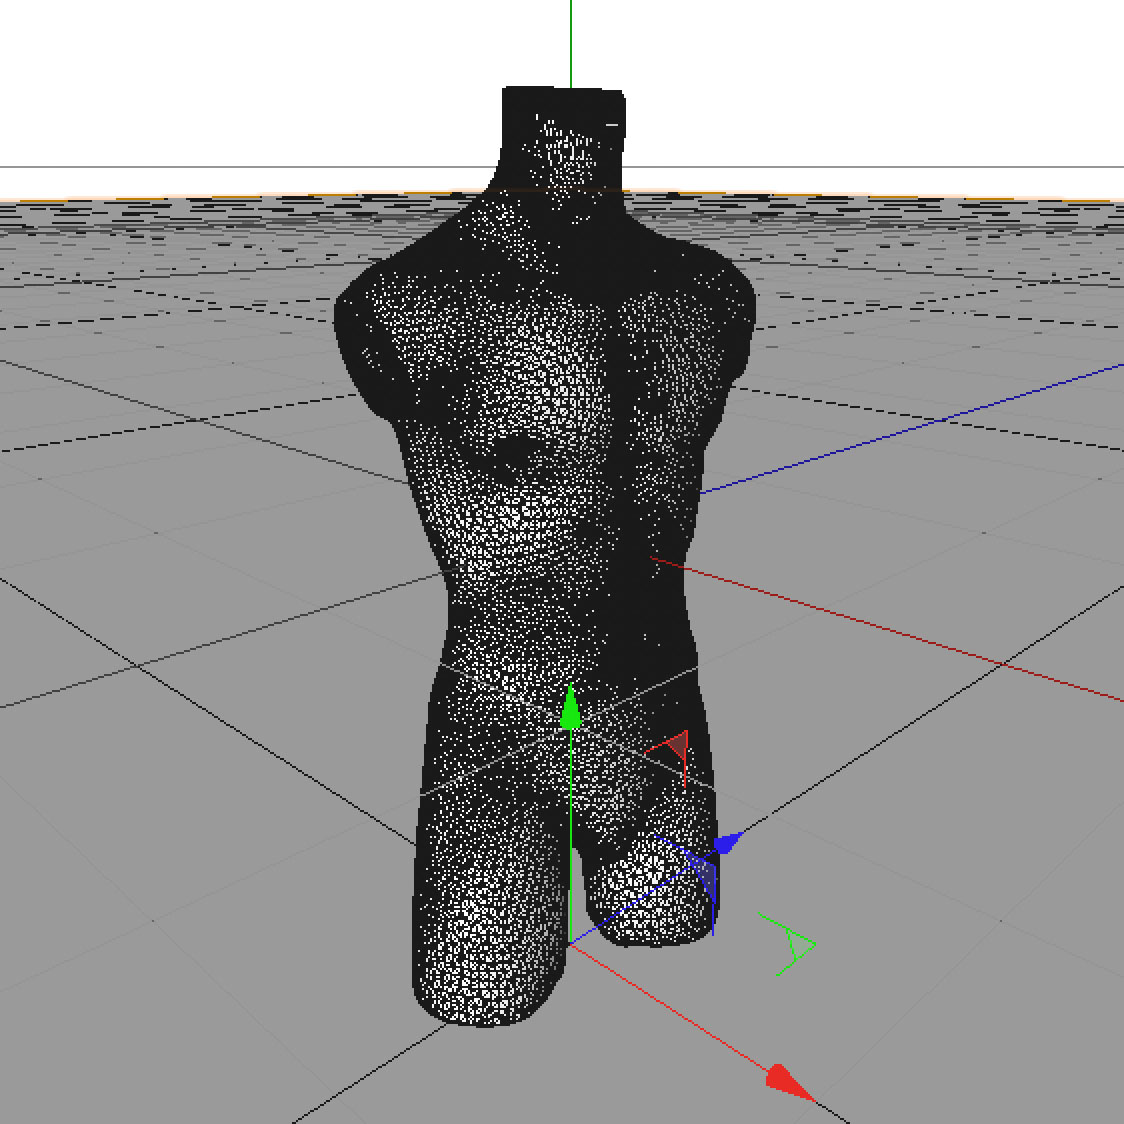 Modelo de torso masculino manequins 3d